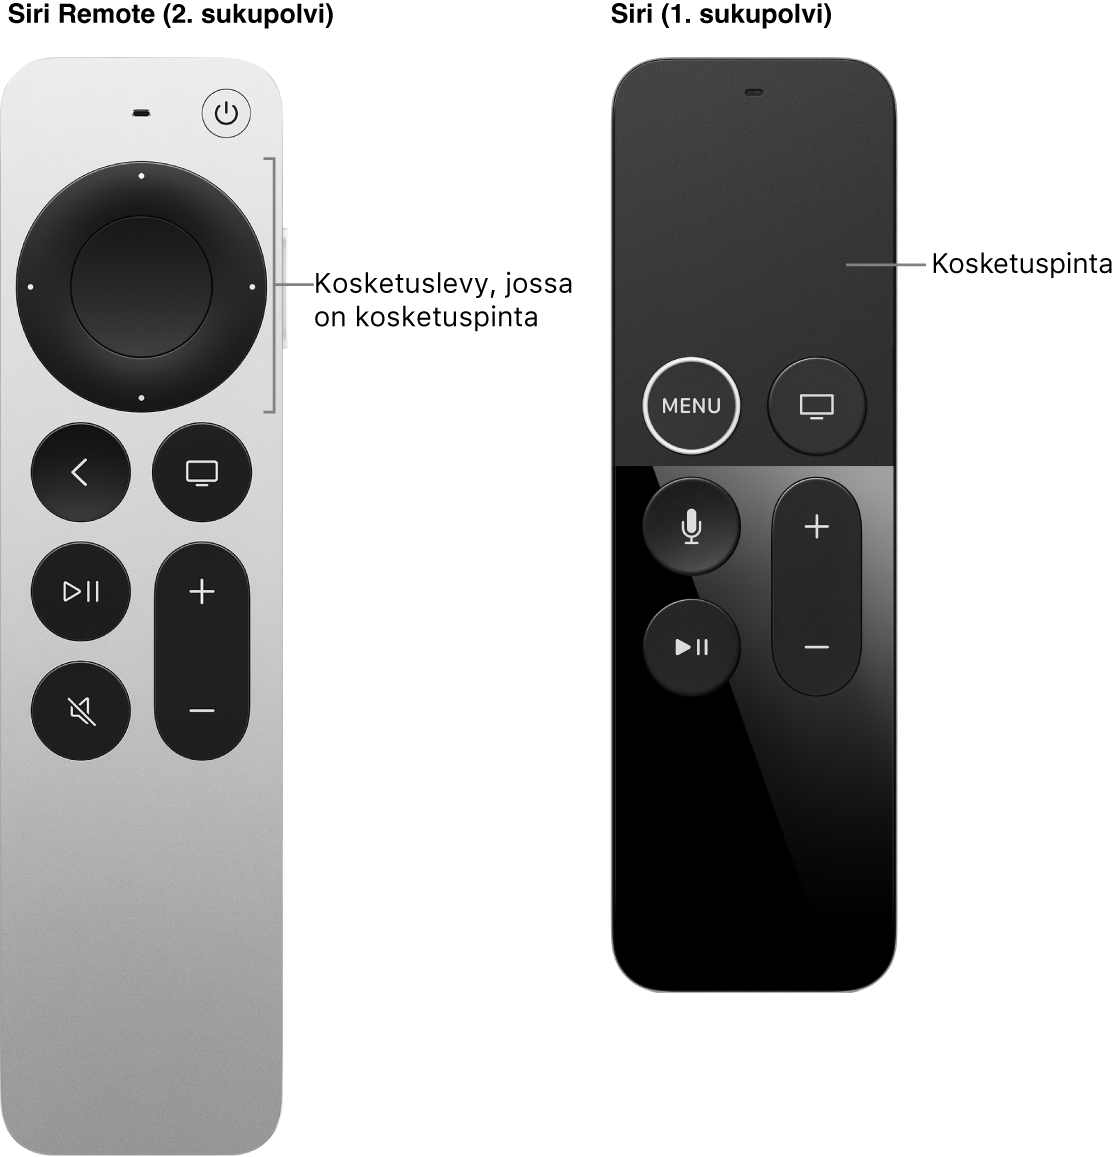 Siri Remote (2. sukupolvi), jossa on kosketuslevy, ja Siri Remote (1. sukupolvi), jossa on kosketuspinta